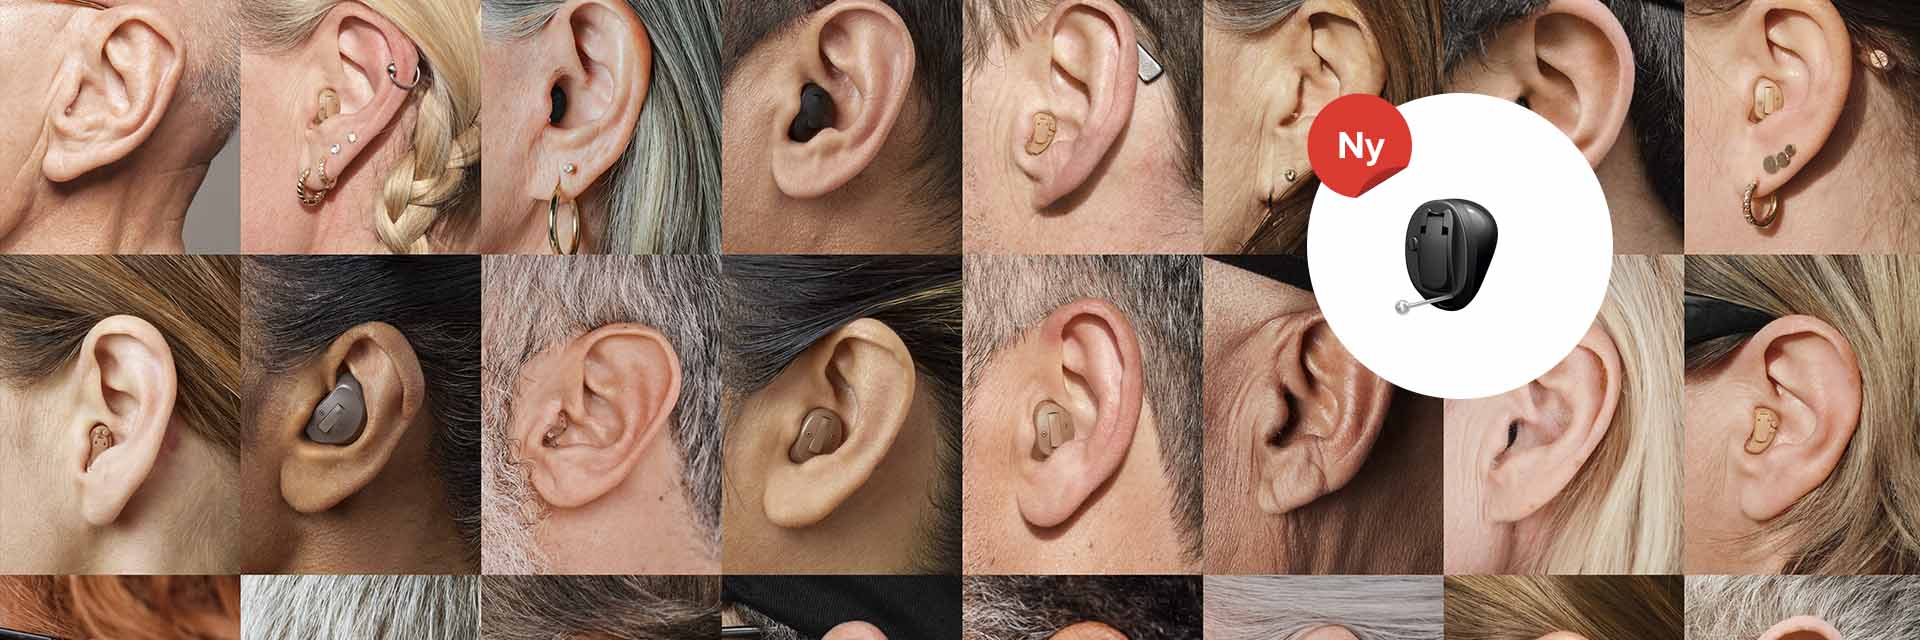 Bild på öron och hörapparater som visar att Audika är experter på hörsel med flera hörselkliniker.